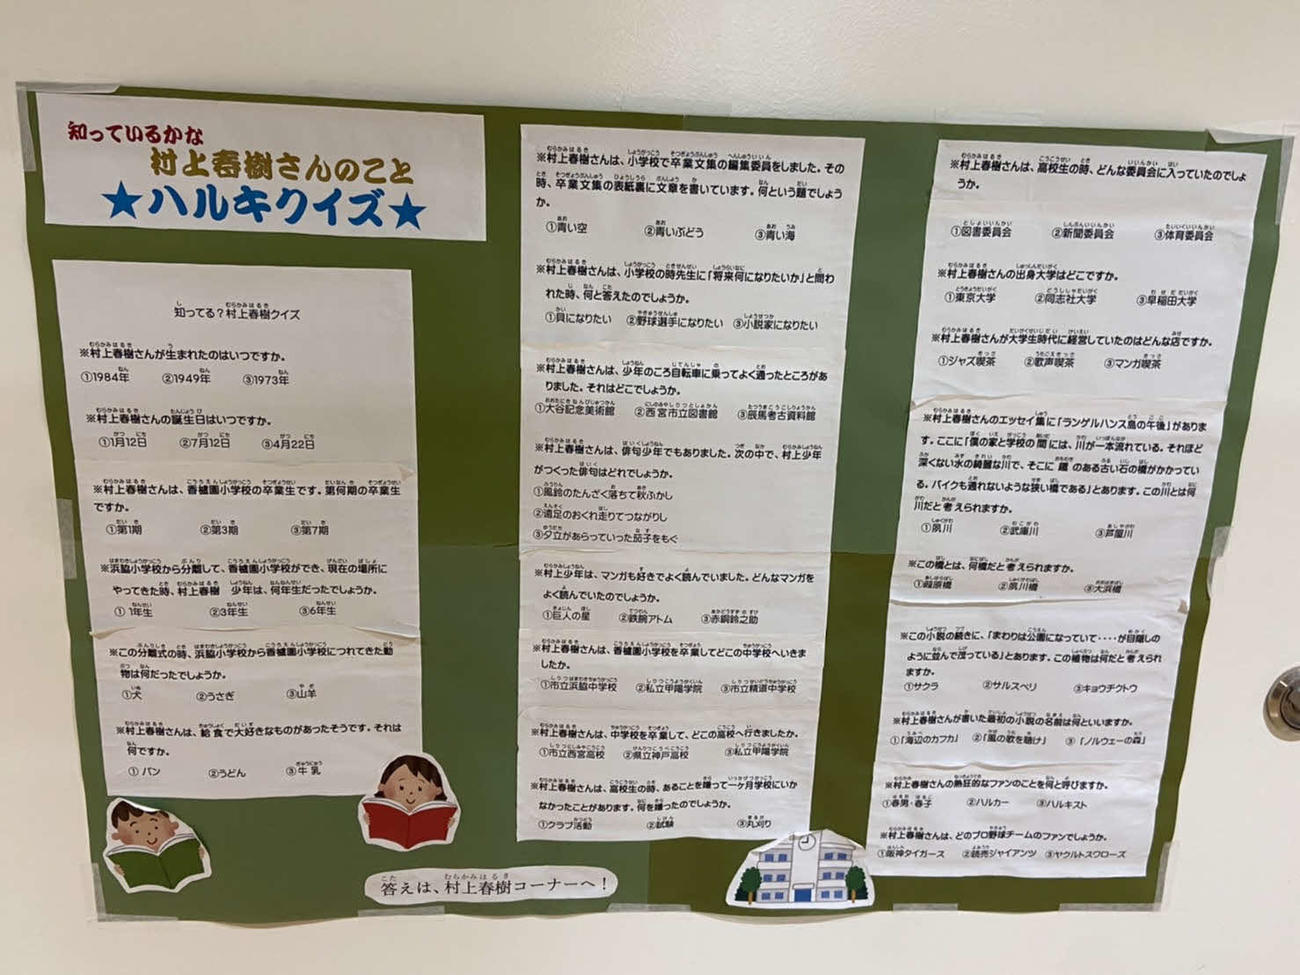 村上春樹さんの母校である兵庫・西宮市立香櫨園小学校に掲載されている、村上さんにまつわるクイズ